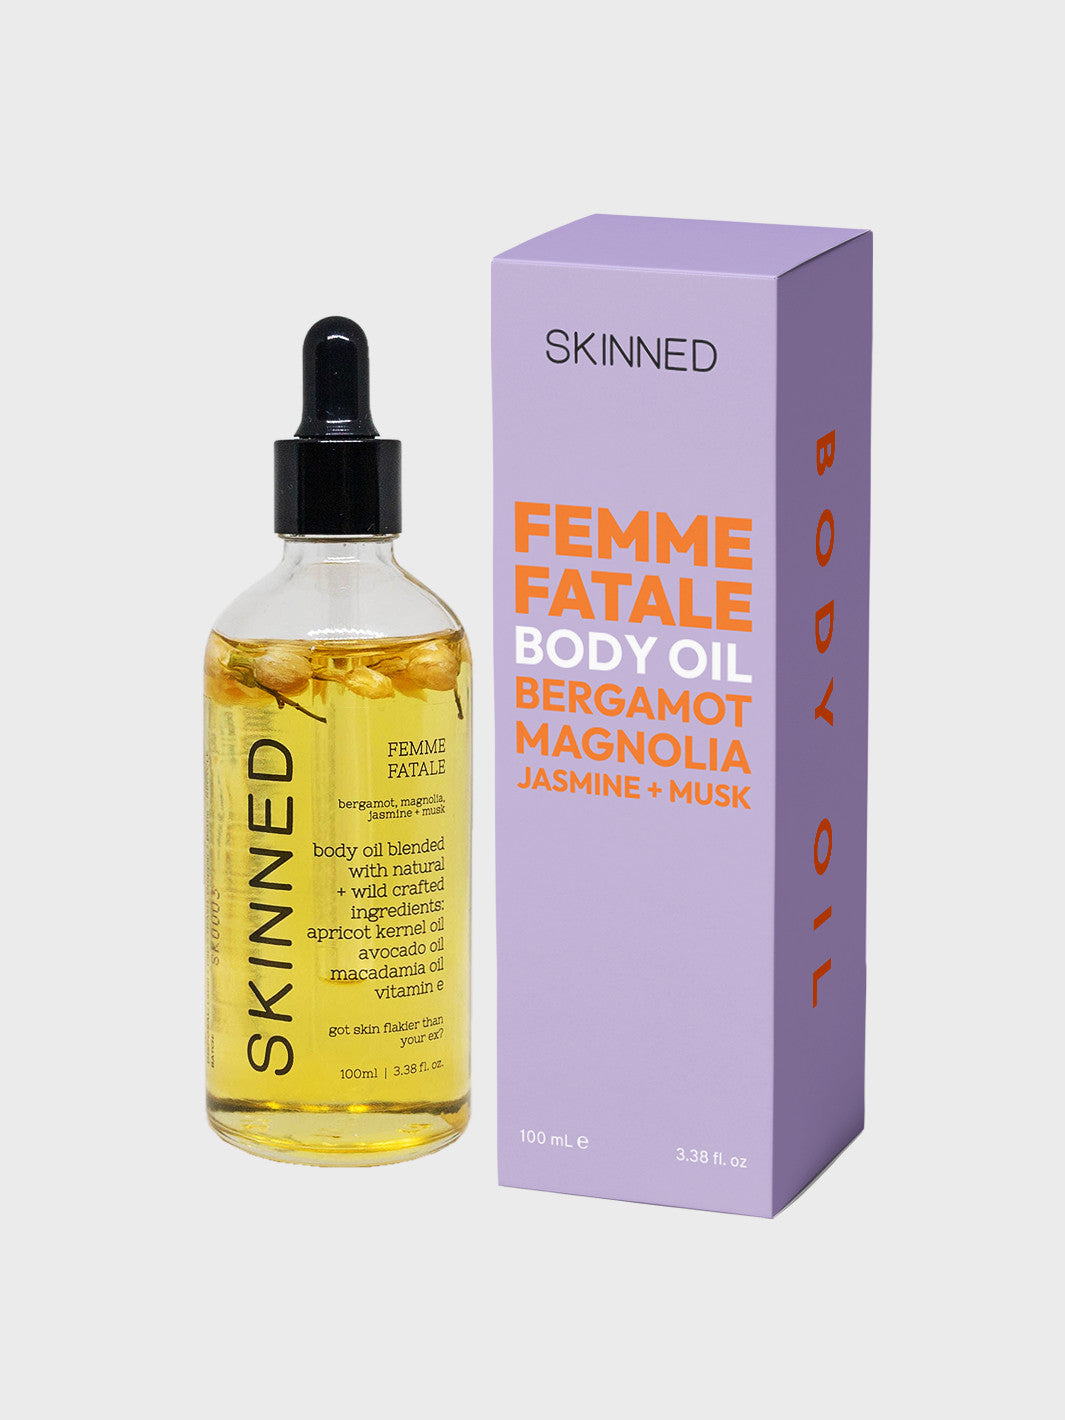 Skinned Femme Fatale Body Oil – Beauty Bae Studio